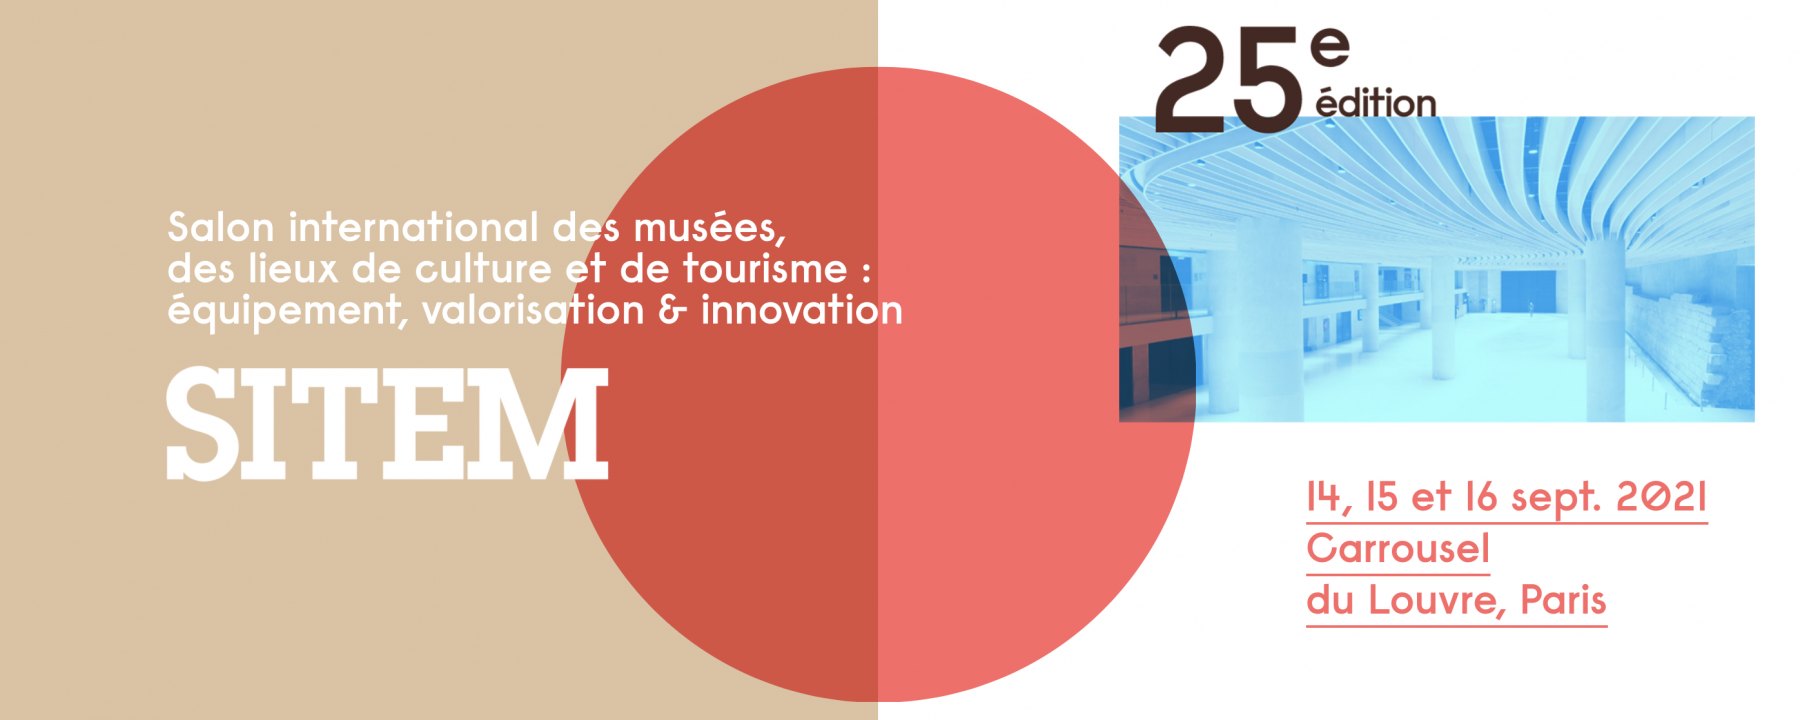 25e édition du Salon International des musées, des lieux de culture et de tourisme du 14 au 16 septembre 2021 au Carrousel du Louvre à Paris 1er